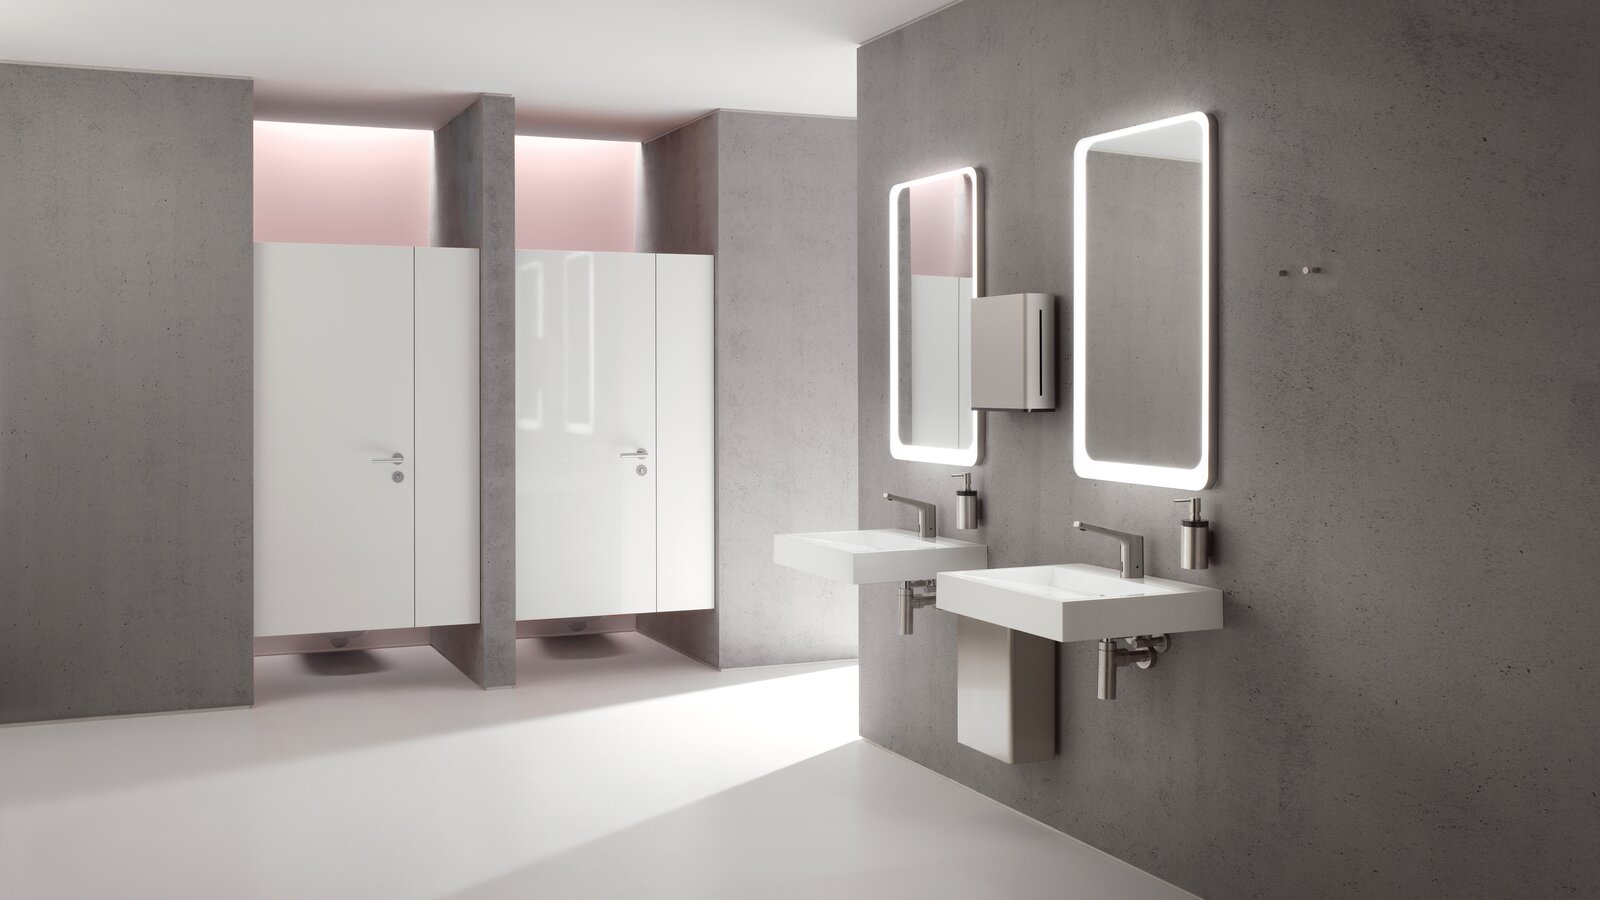 Öffentliches WC ausgestattet mit HEWI System 162 in Edelstahl matt